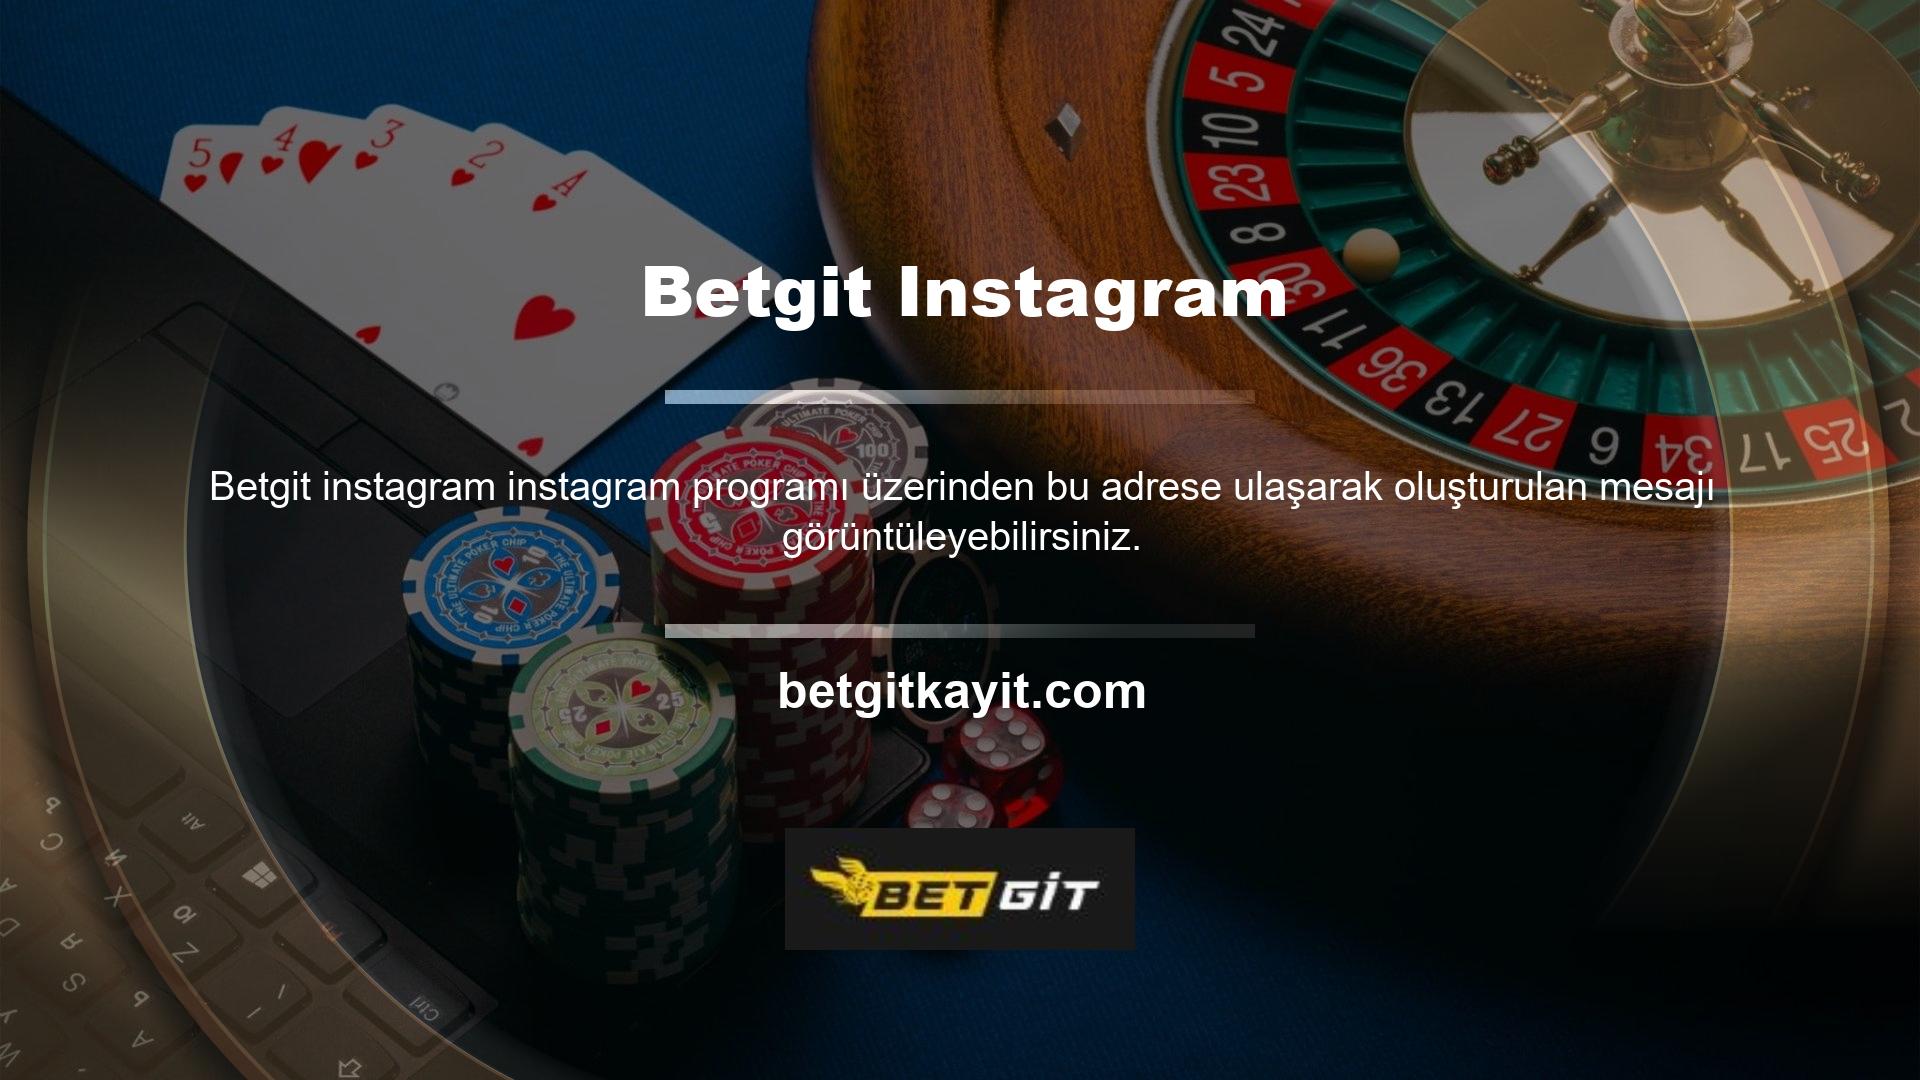 Instagram sayfasındaki Betgit adresi orijinal adres olduğundan güvenle kullanabilirsiniz